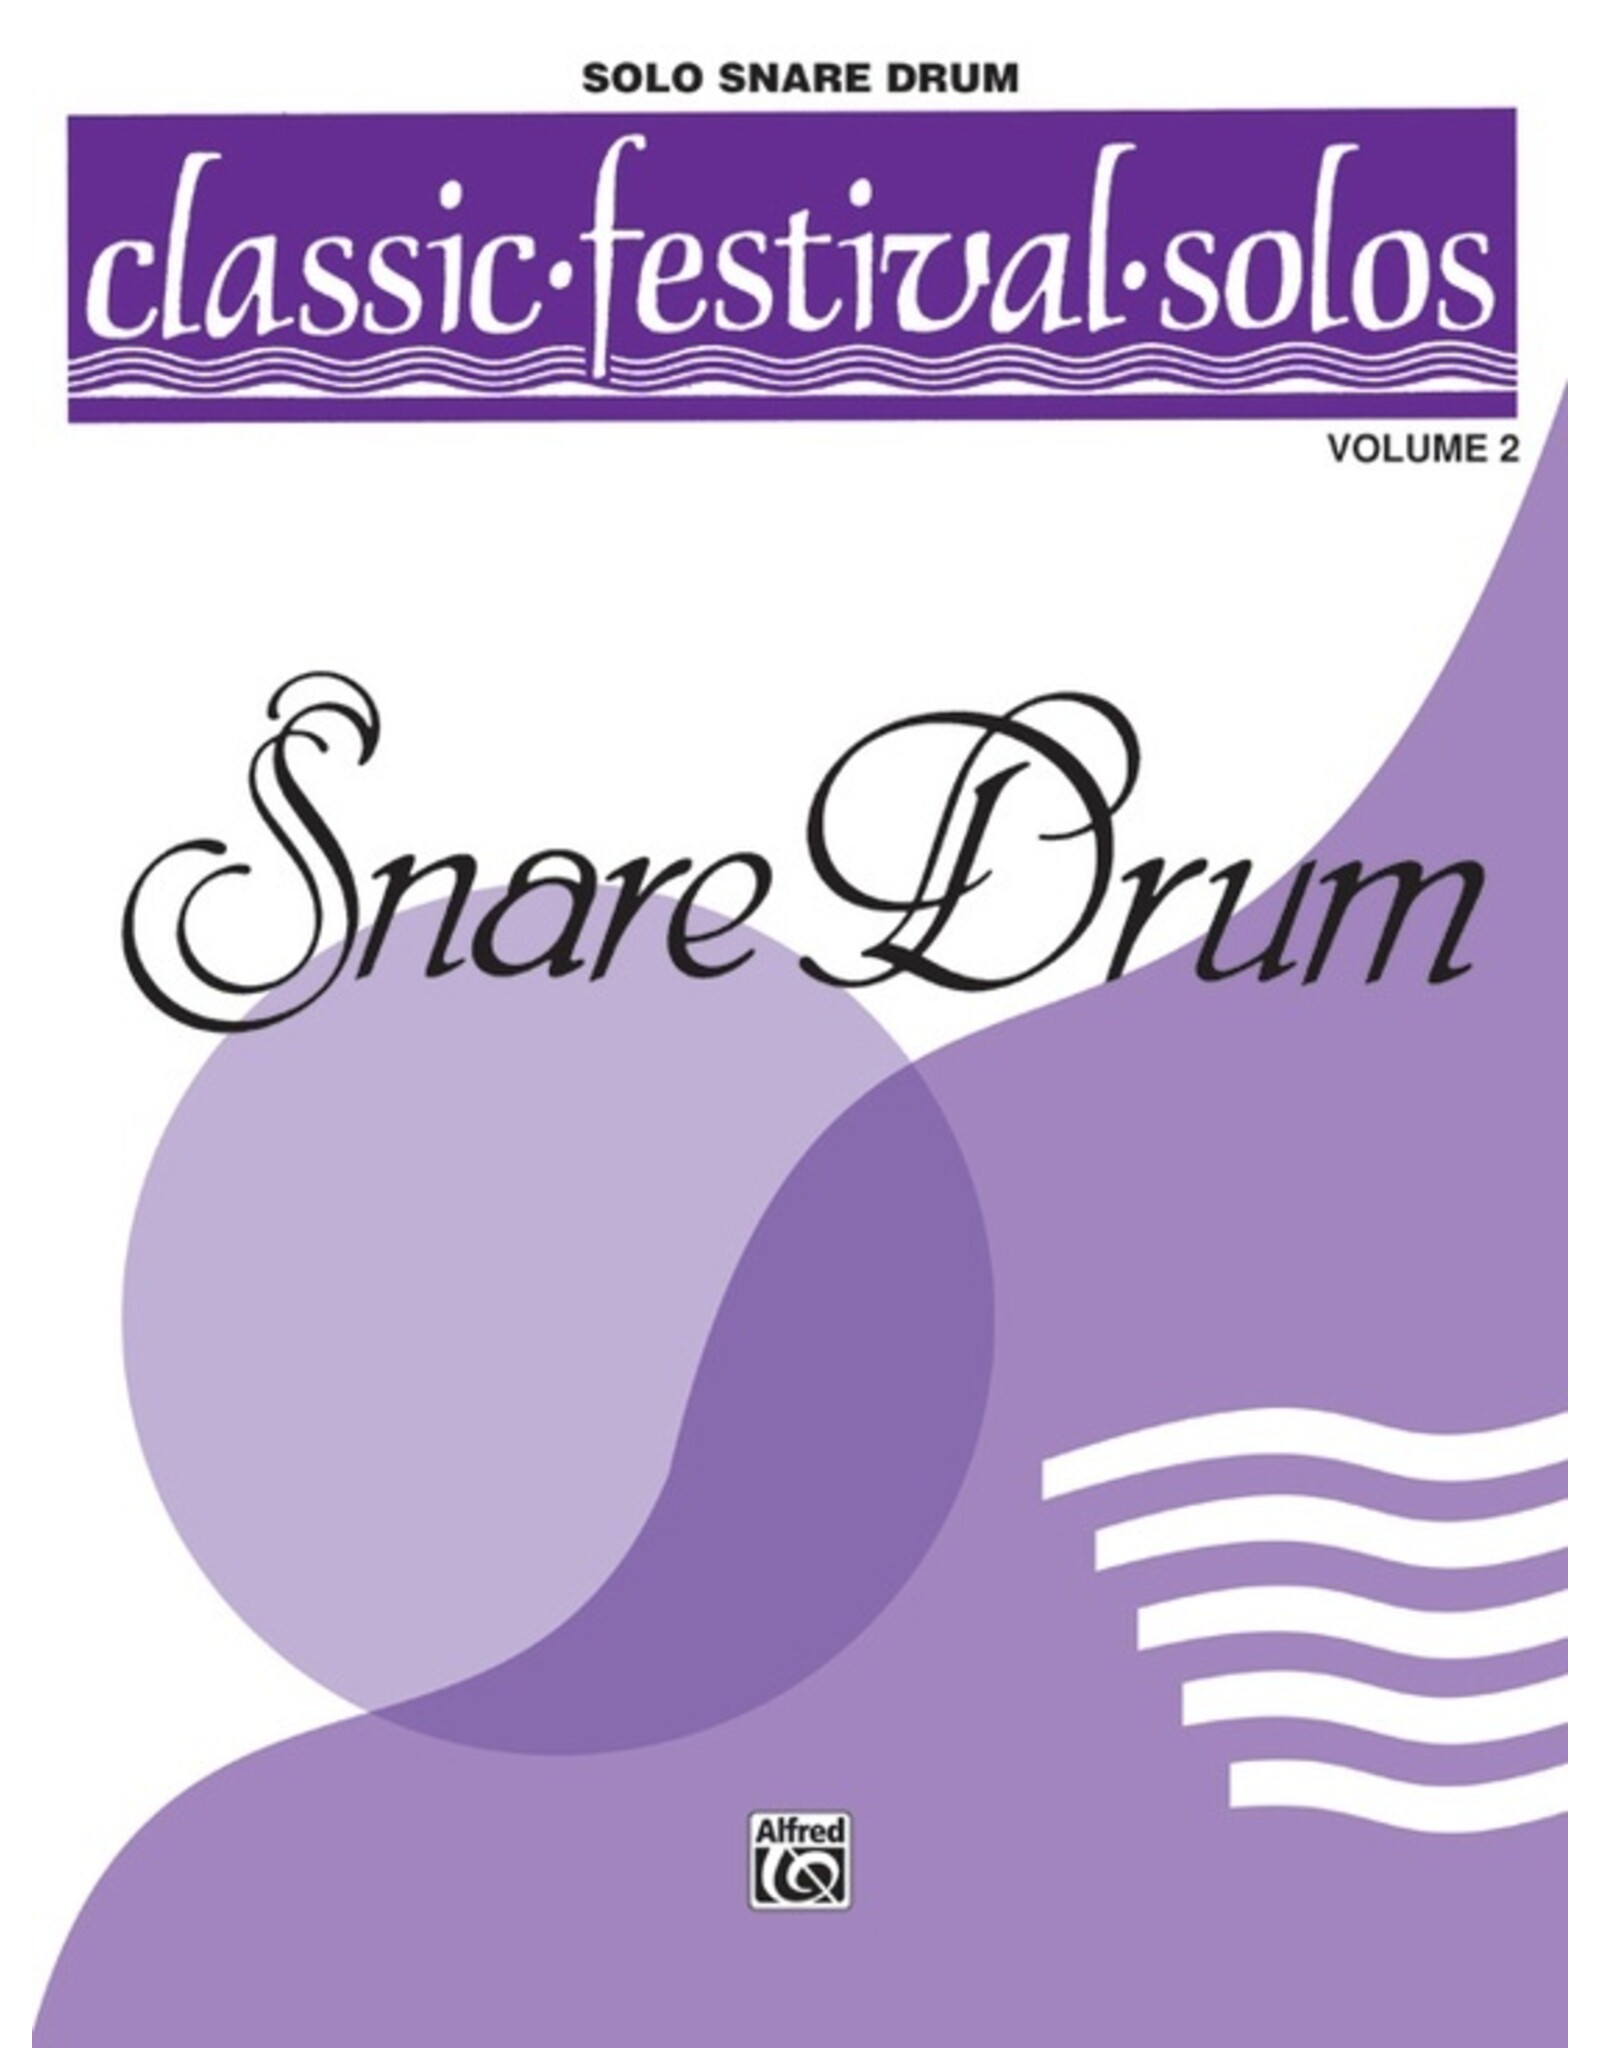 Alfred Classic Festival Solos (Snare Drum), Volume 2 Solo Book (Unaccompanied)